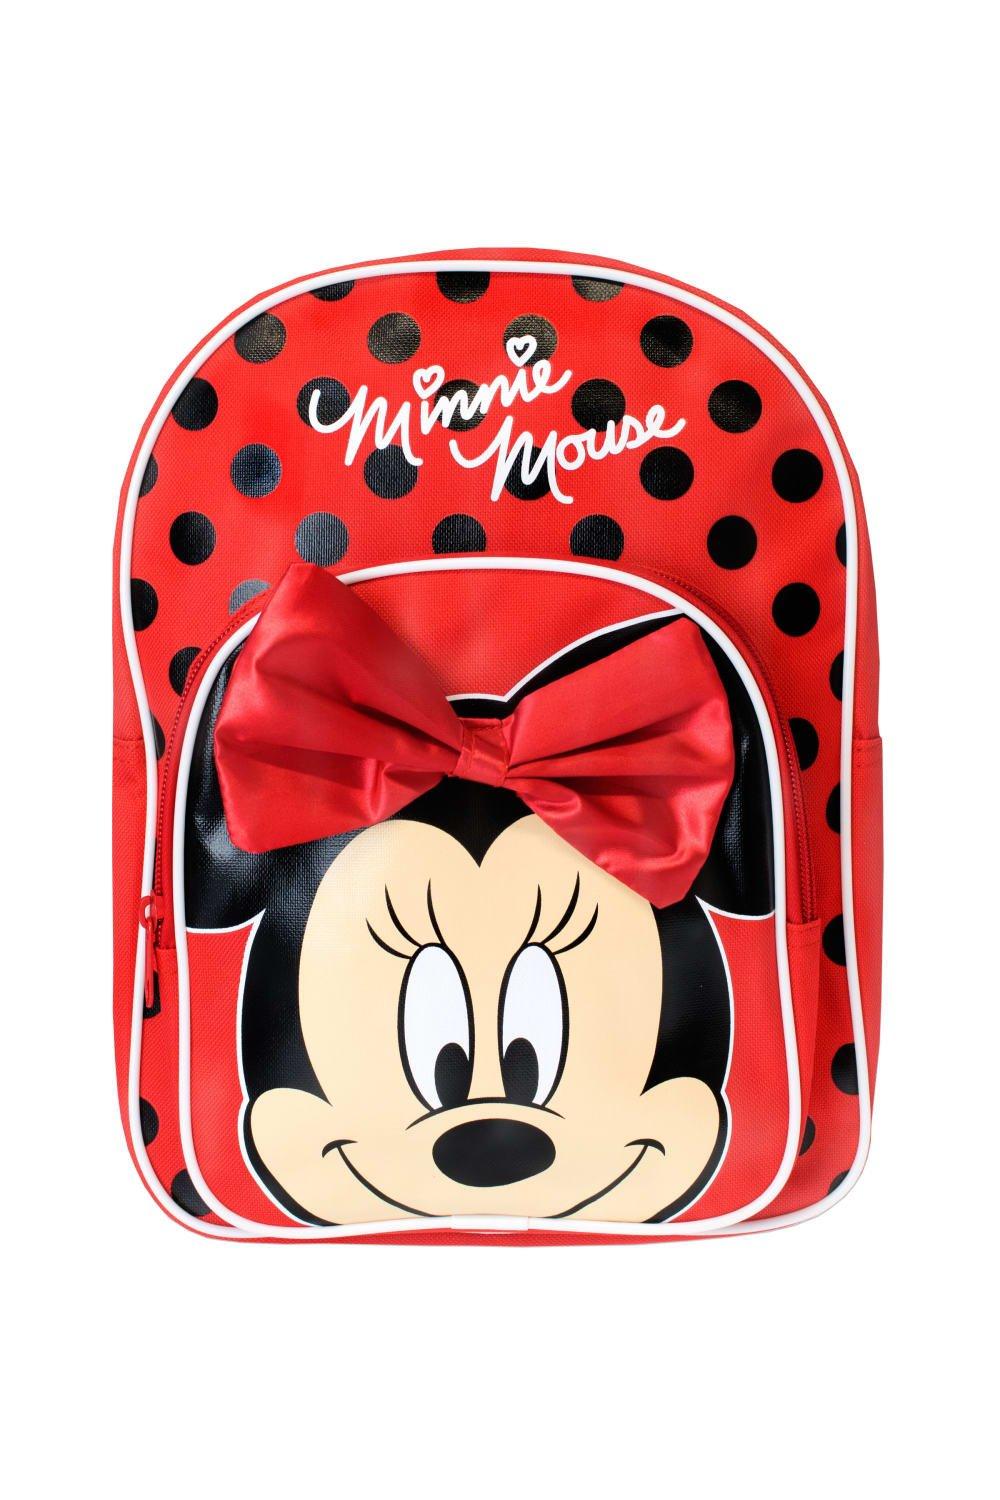 Детский рюкзак Минни Маус с 3D бантиком Disney, красный детский рюкзак минни маус с 3d бантиком disney красный